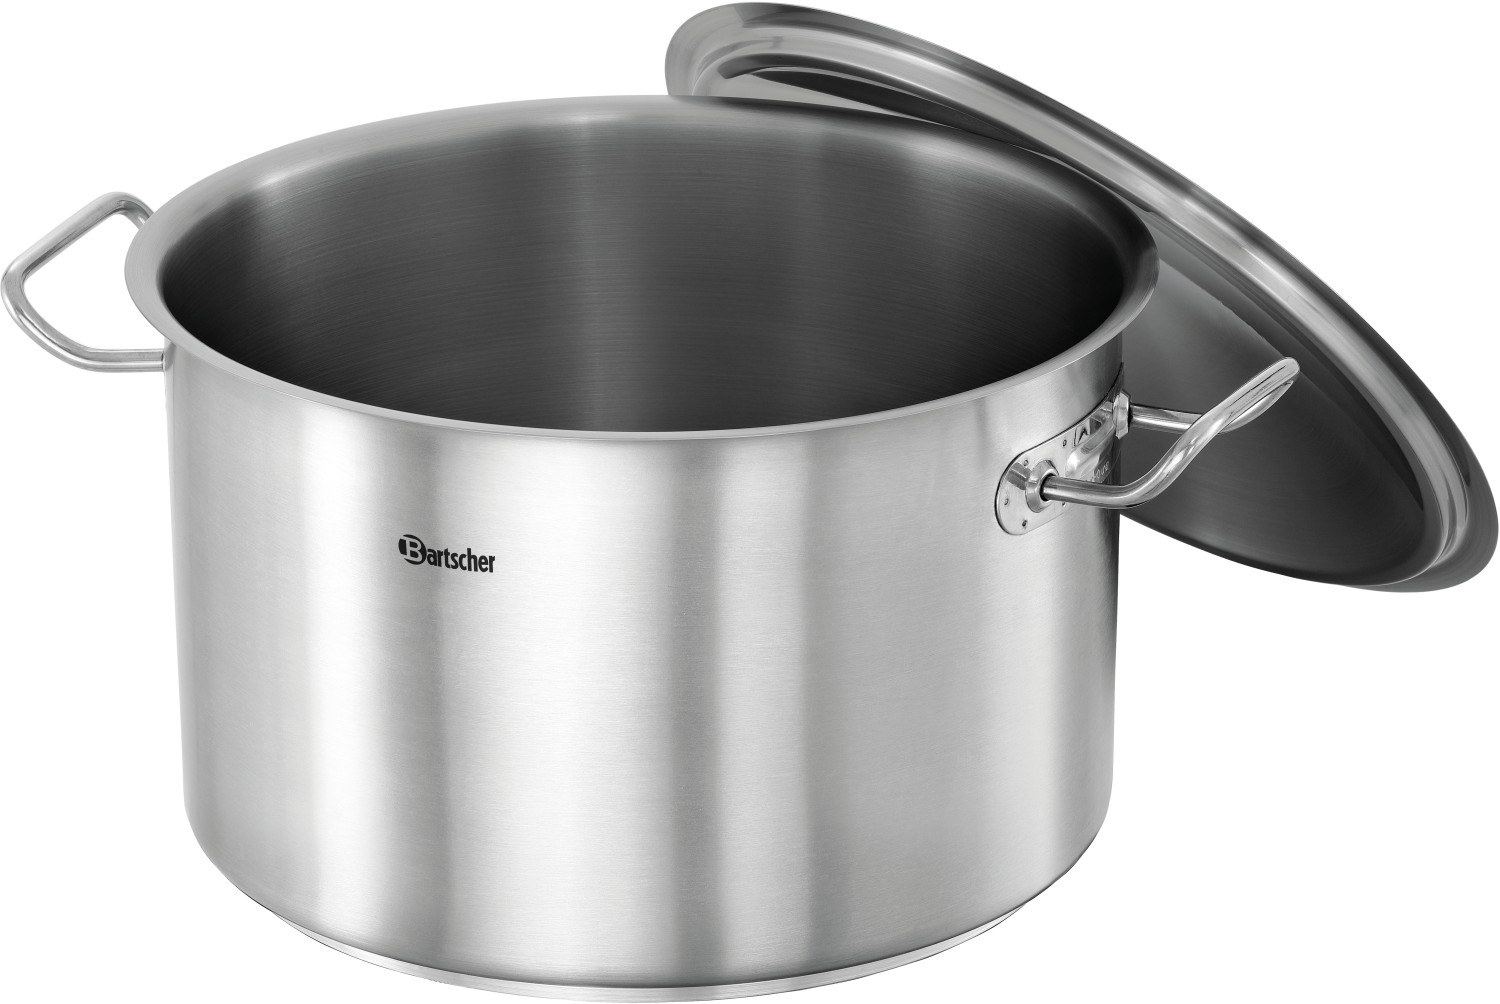  Bartscher Cooking pot E16L-1 